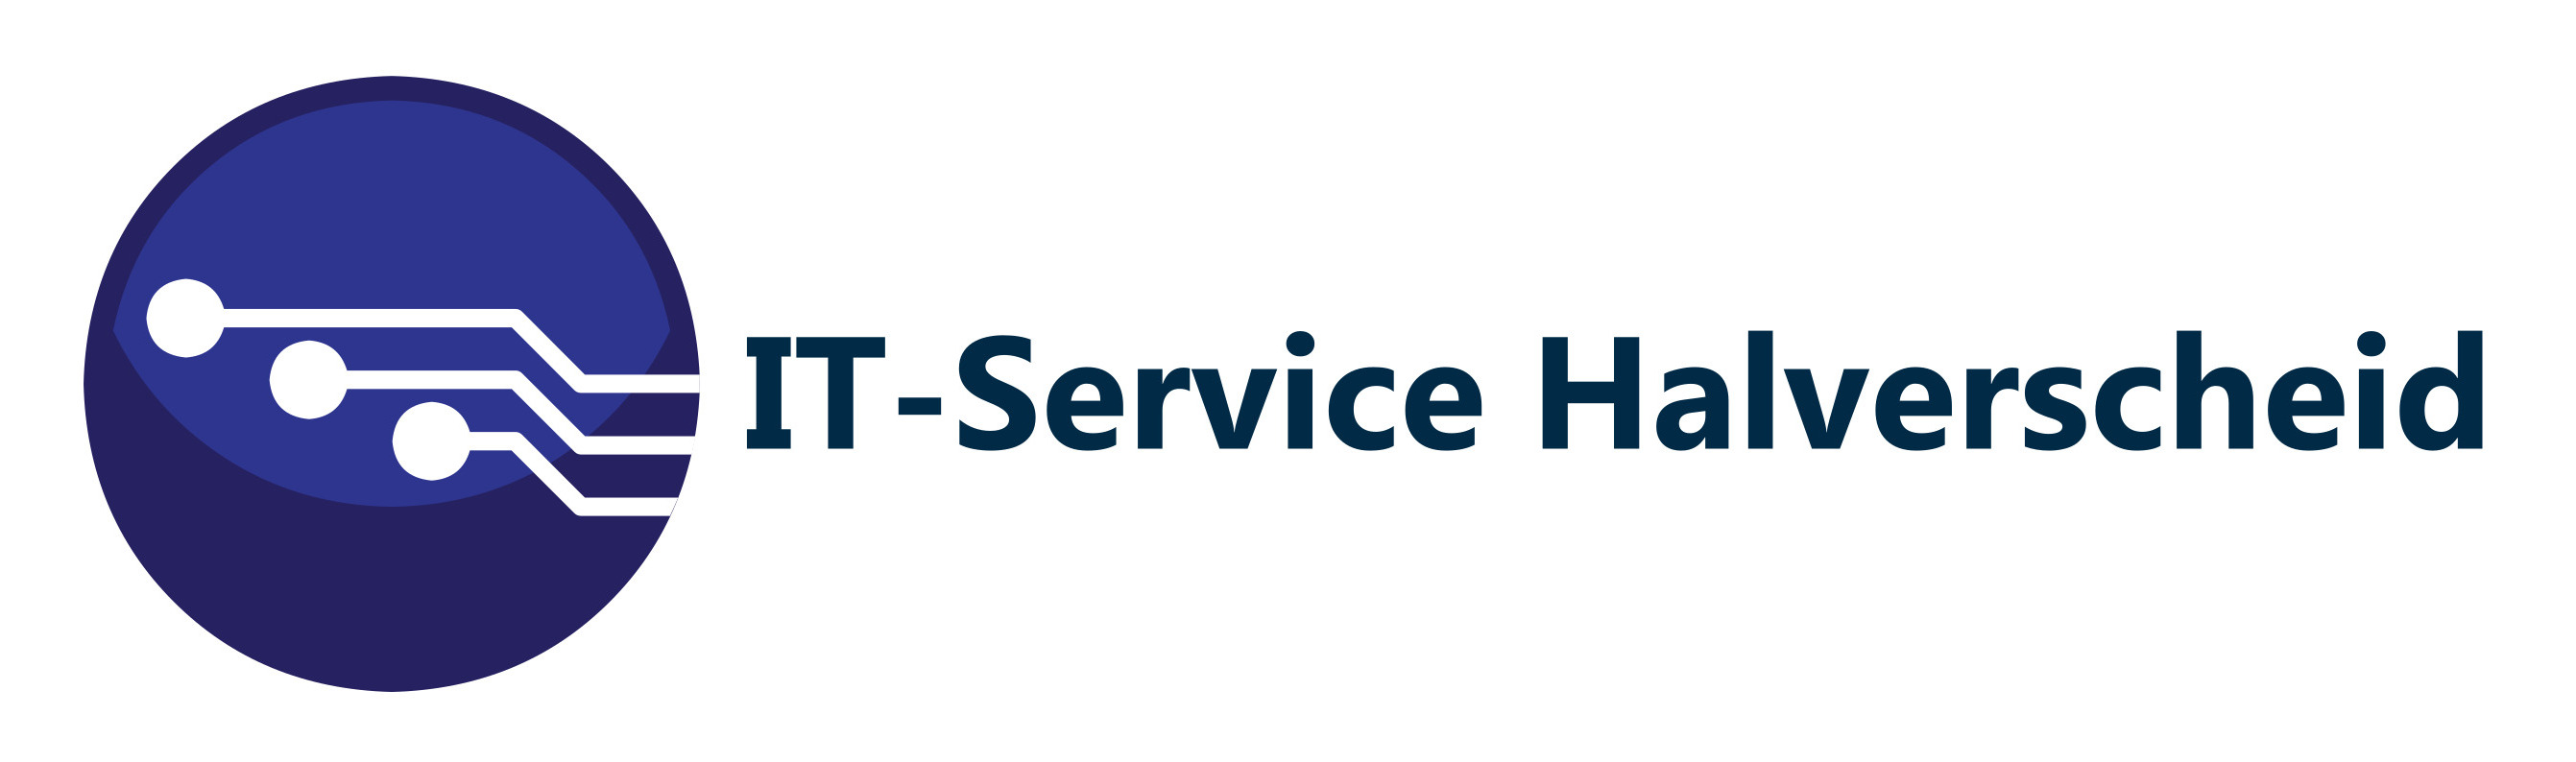 IT-Service Halverscheid